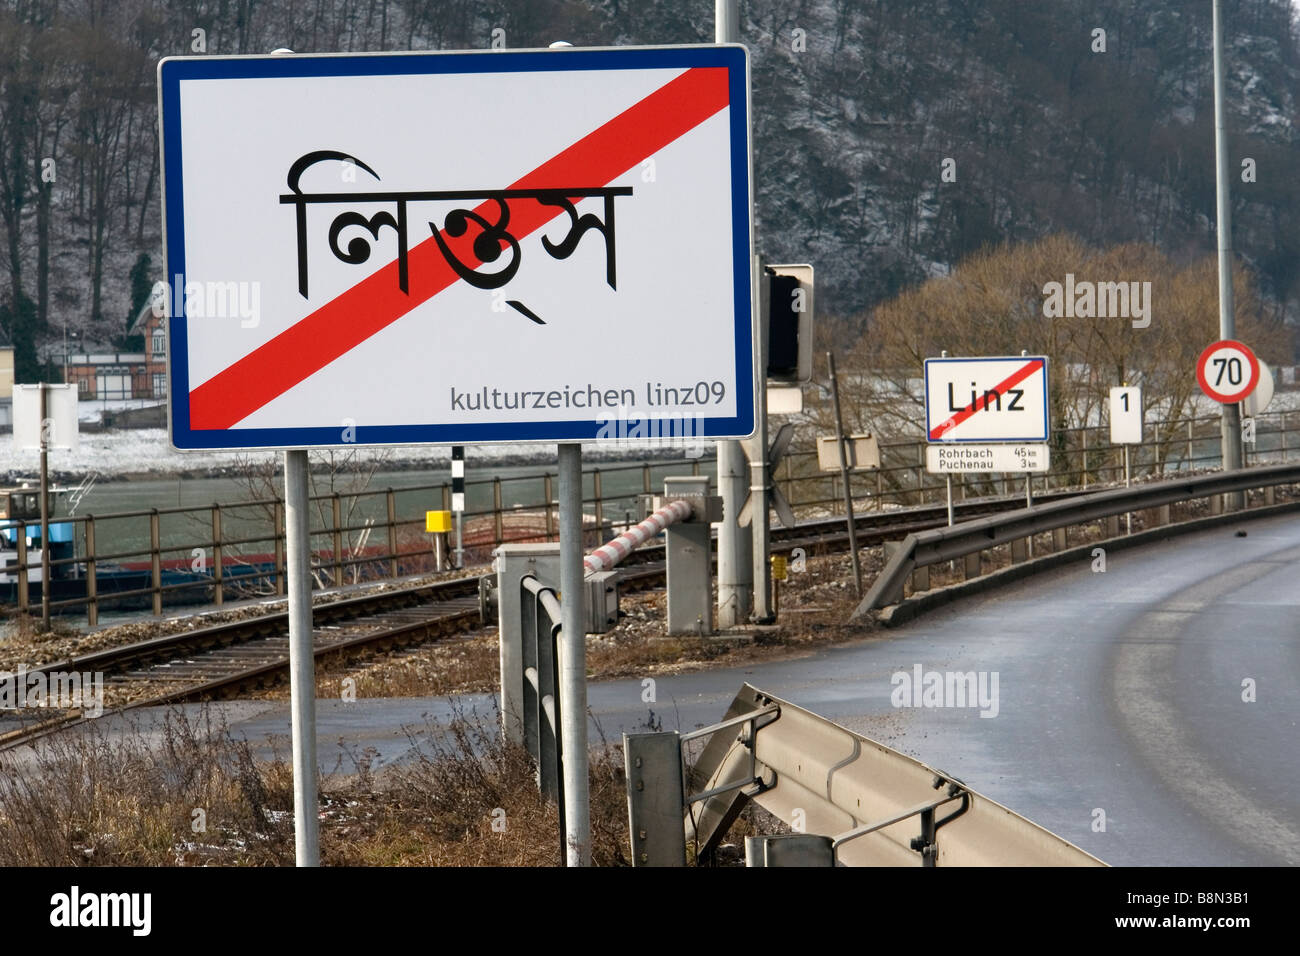 Linz Stadt Name Verkehrszeichen in Hindi - Österreich - 2009 Europäische Kulturhauptstadt Stockfoto